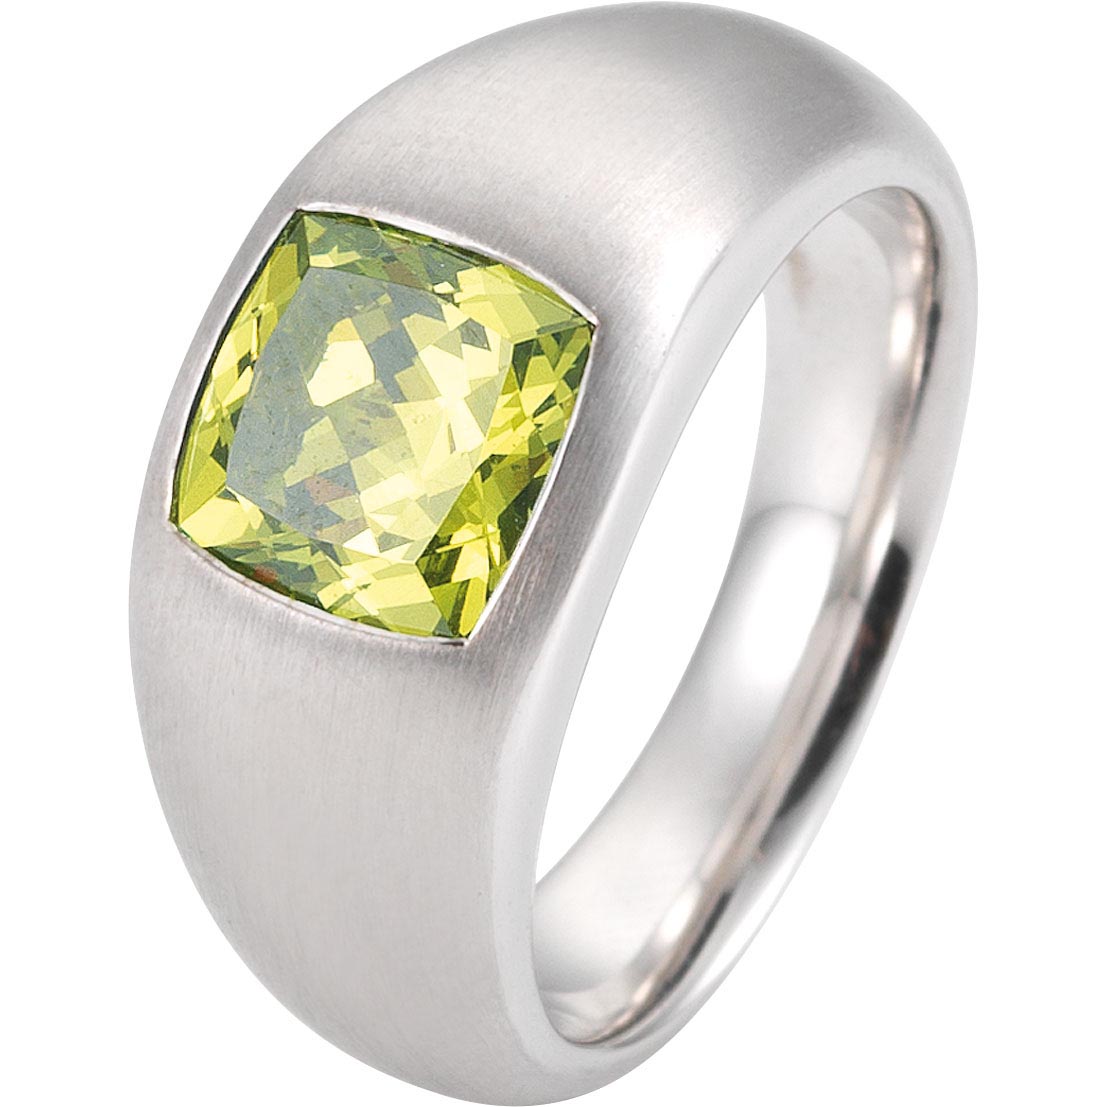 Pasgemaakte ontwerp 925 sterling silwer ring van juweliersware vervaardiger China, vinnig gestuur.